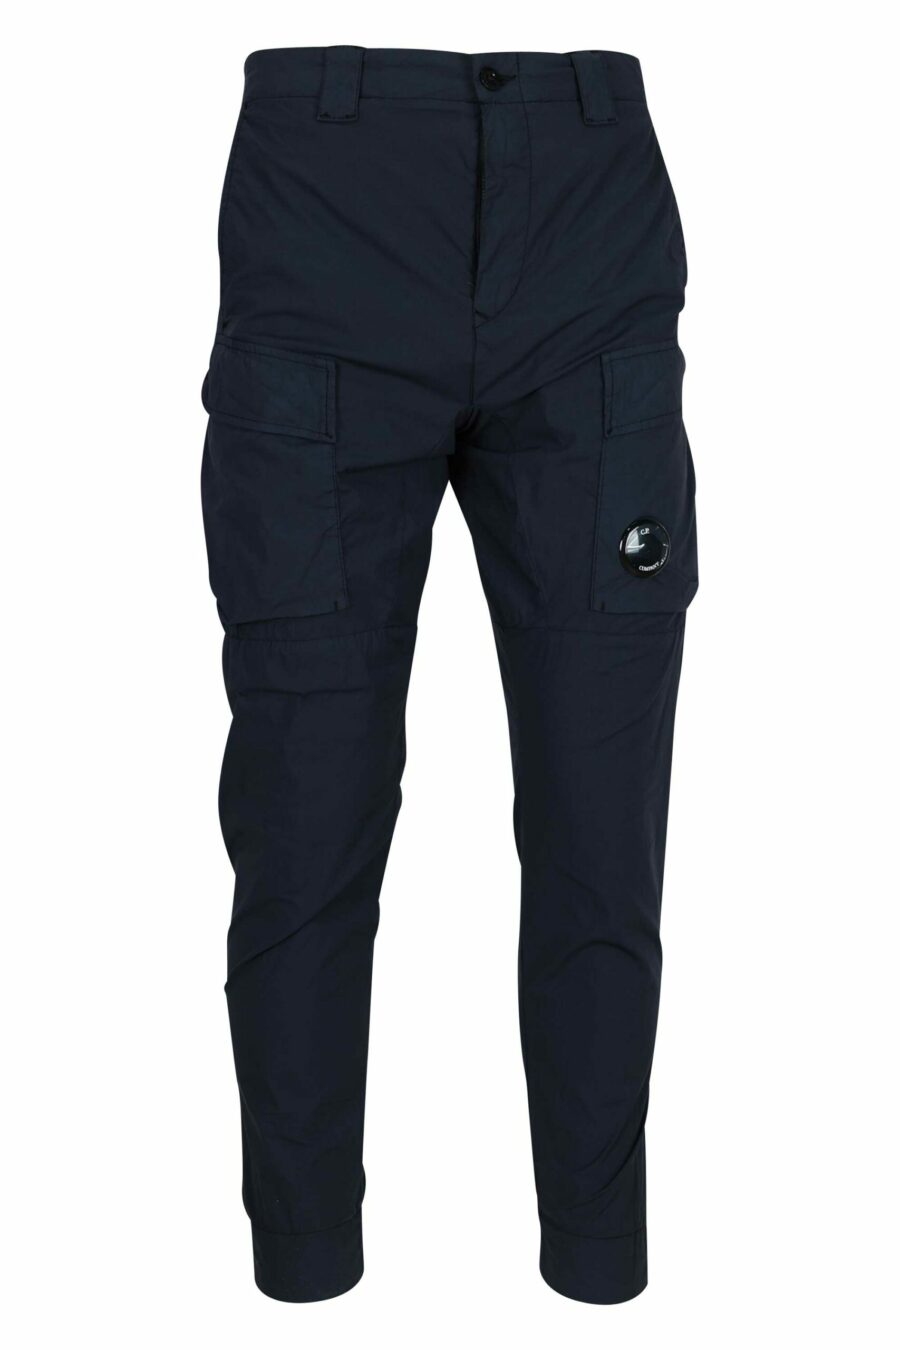 Pantalón azul oscuro con bolsillos frontales y minilogo lente - 7620943806397 scaled